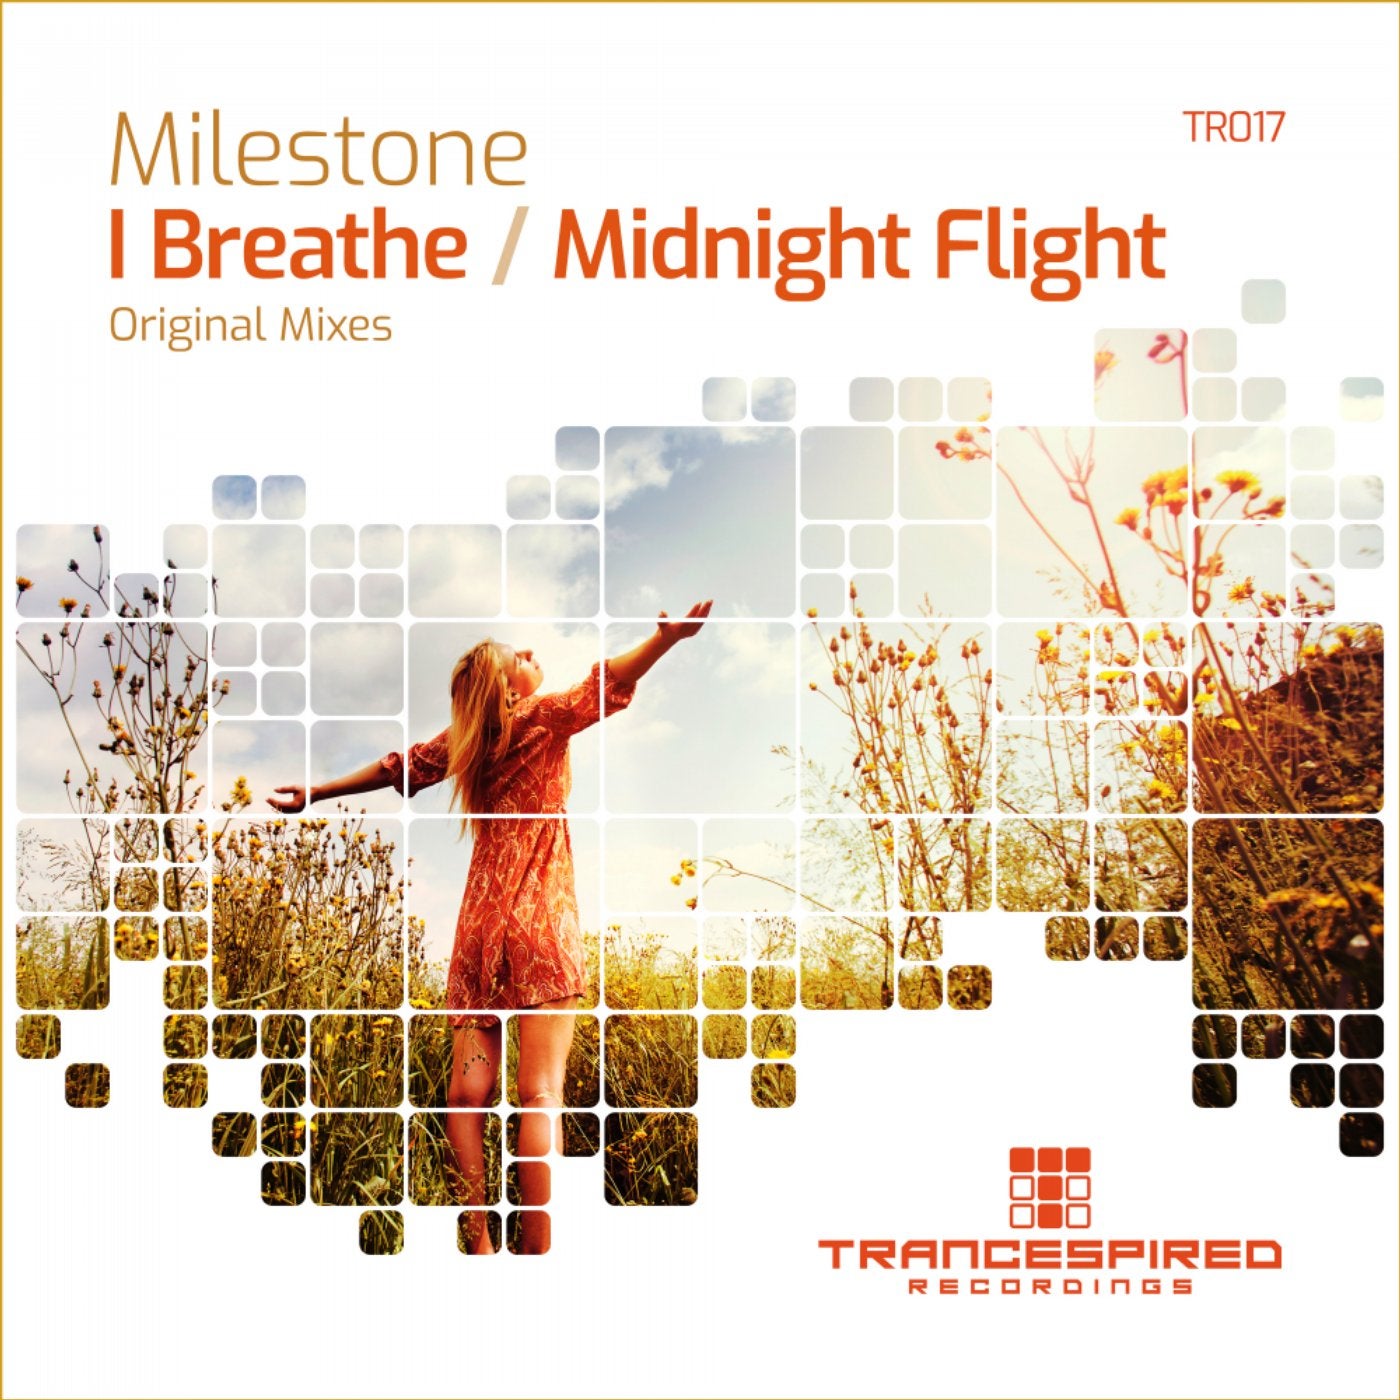 I Breathe / Midnight Flight